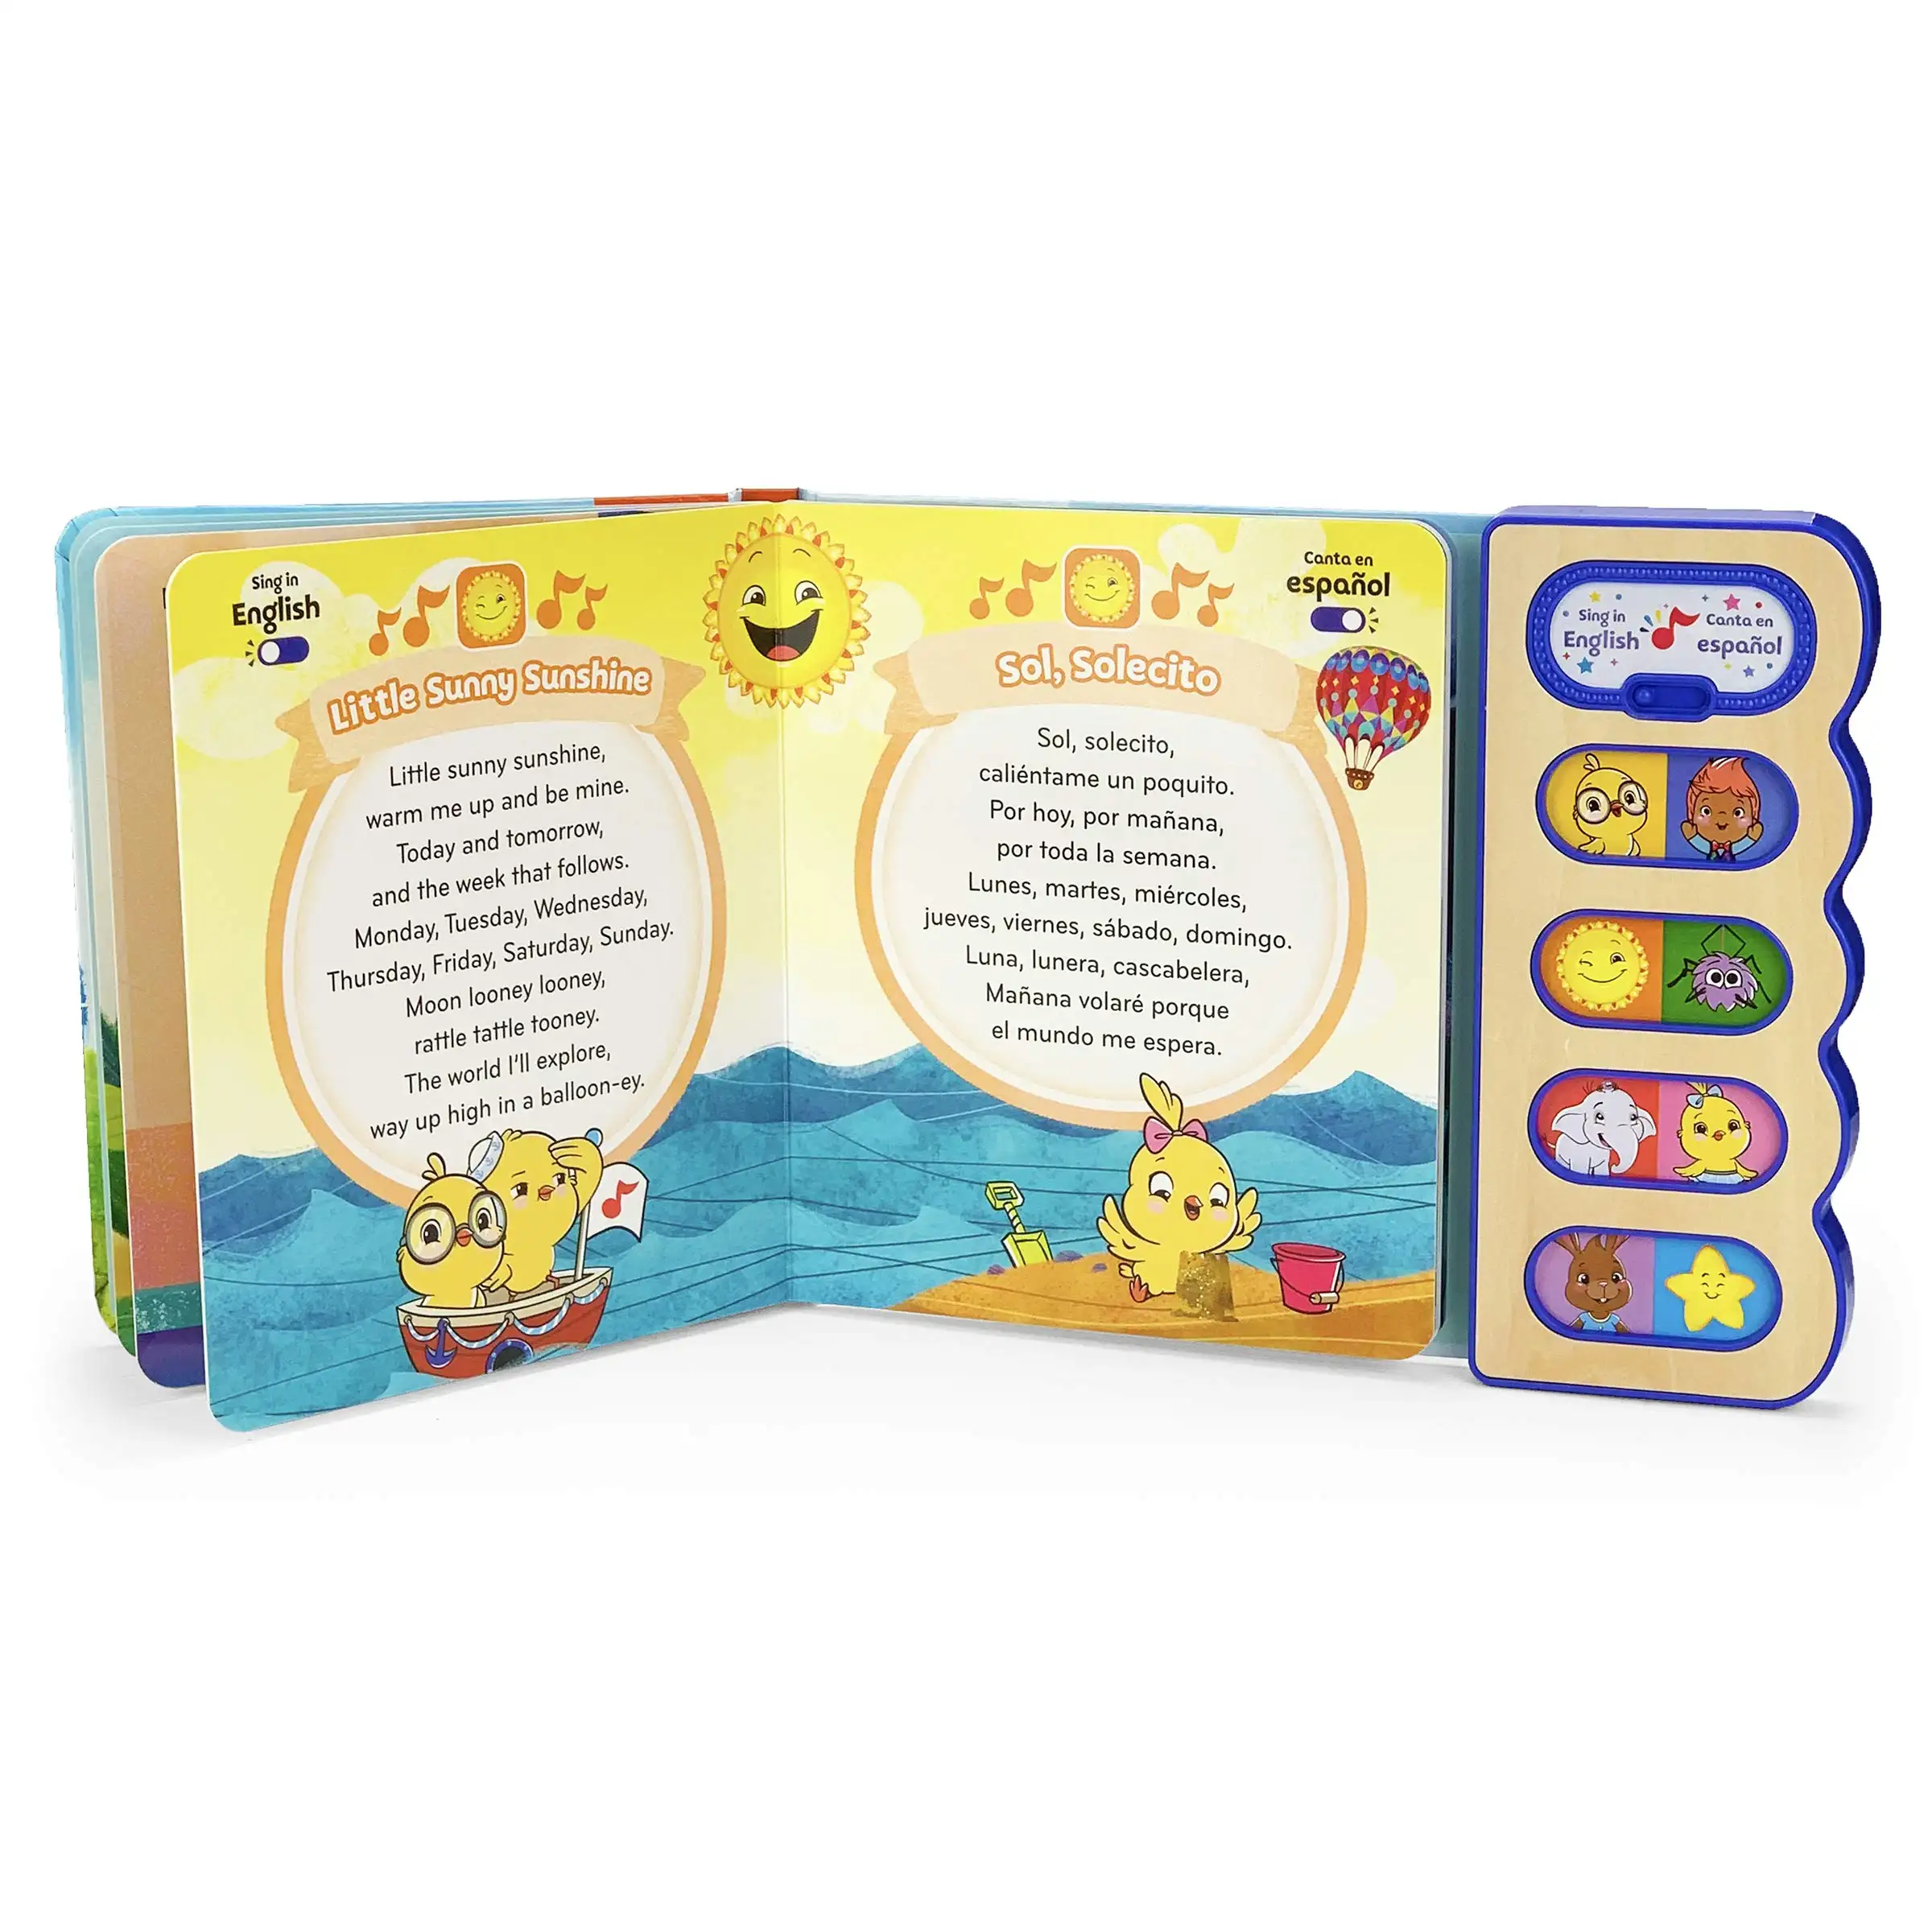 Fábrica personalizar 8 Botones bilingüe tablero de sonido libro Niños canción libro parlante